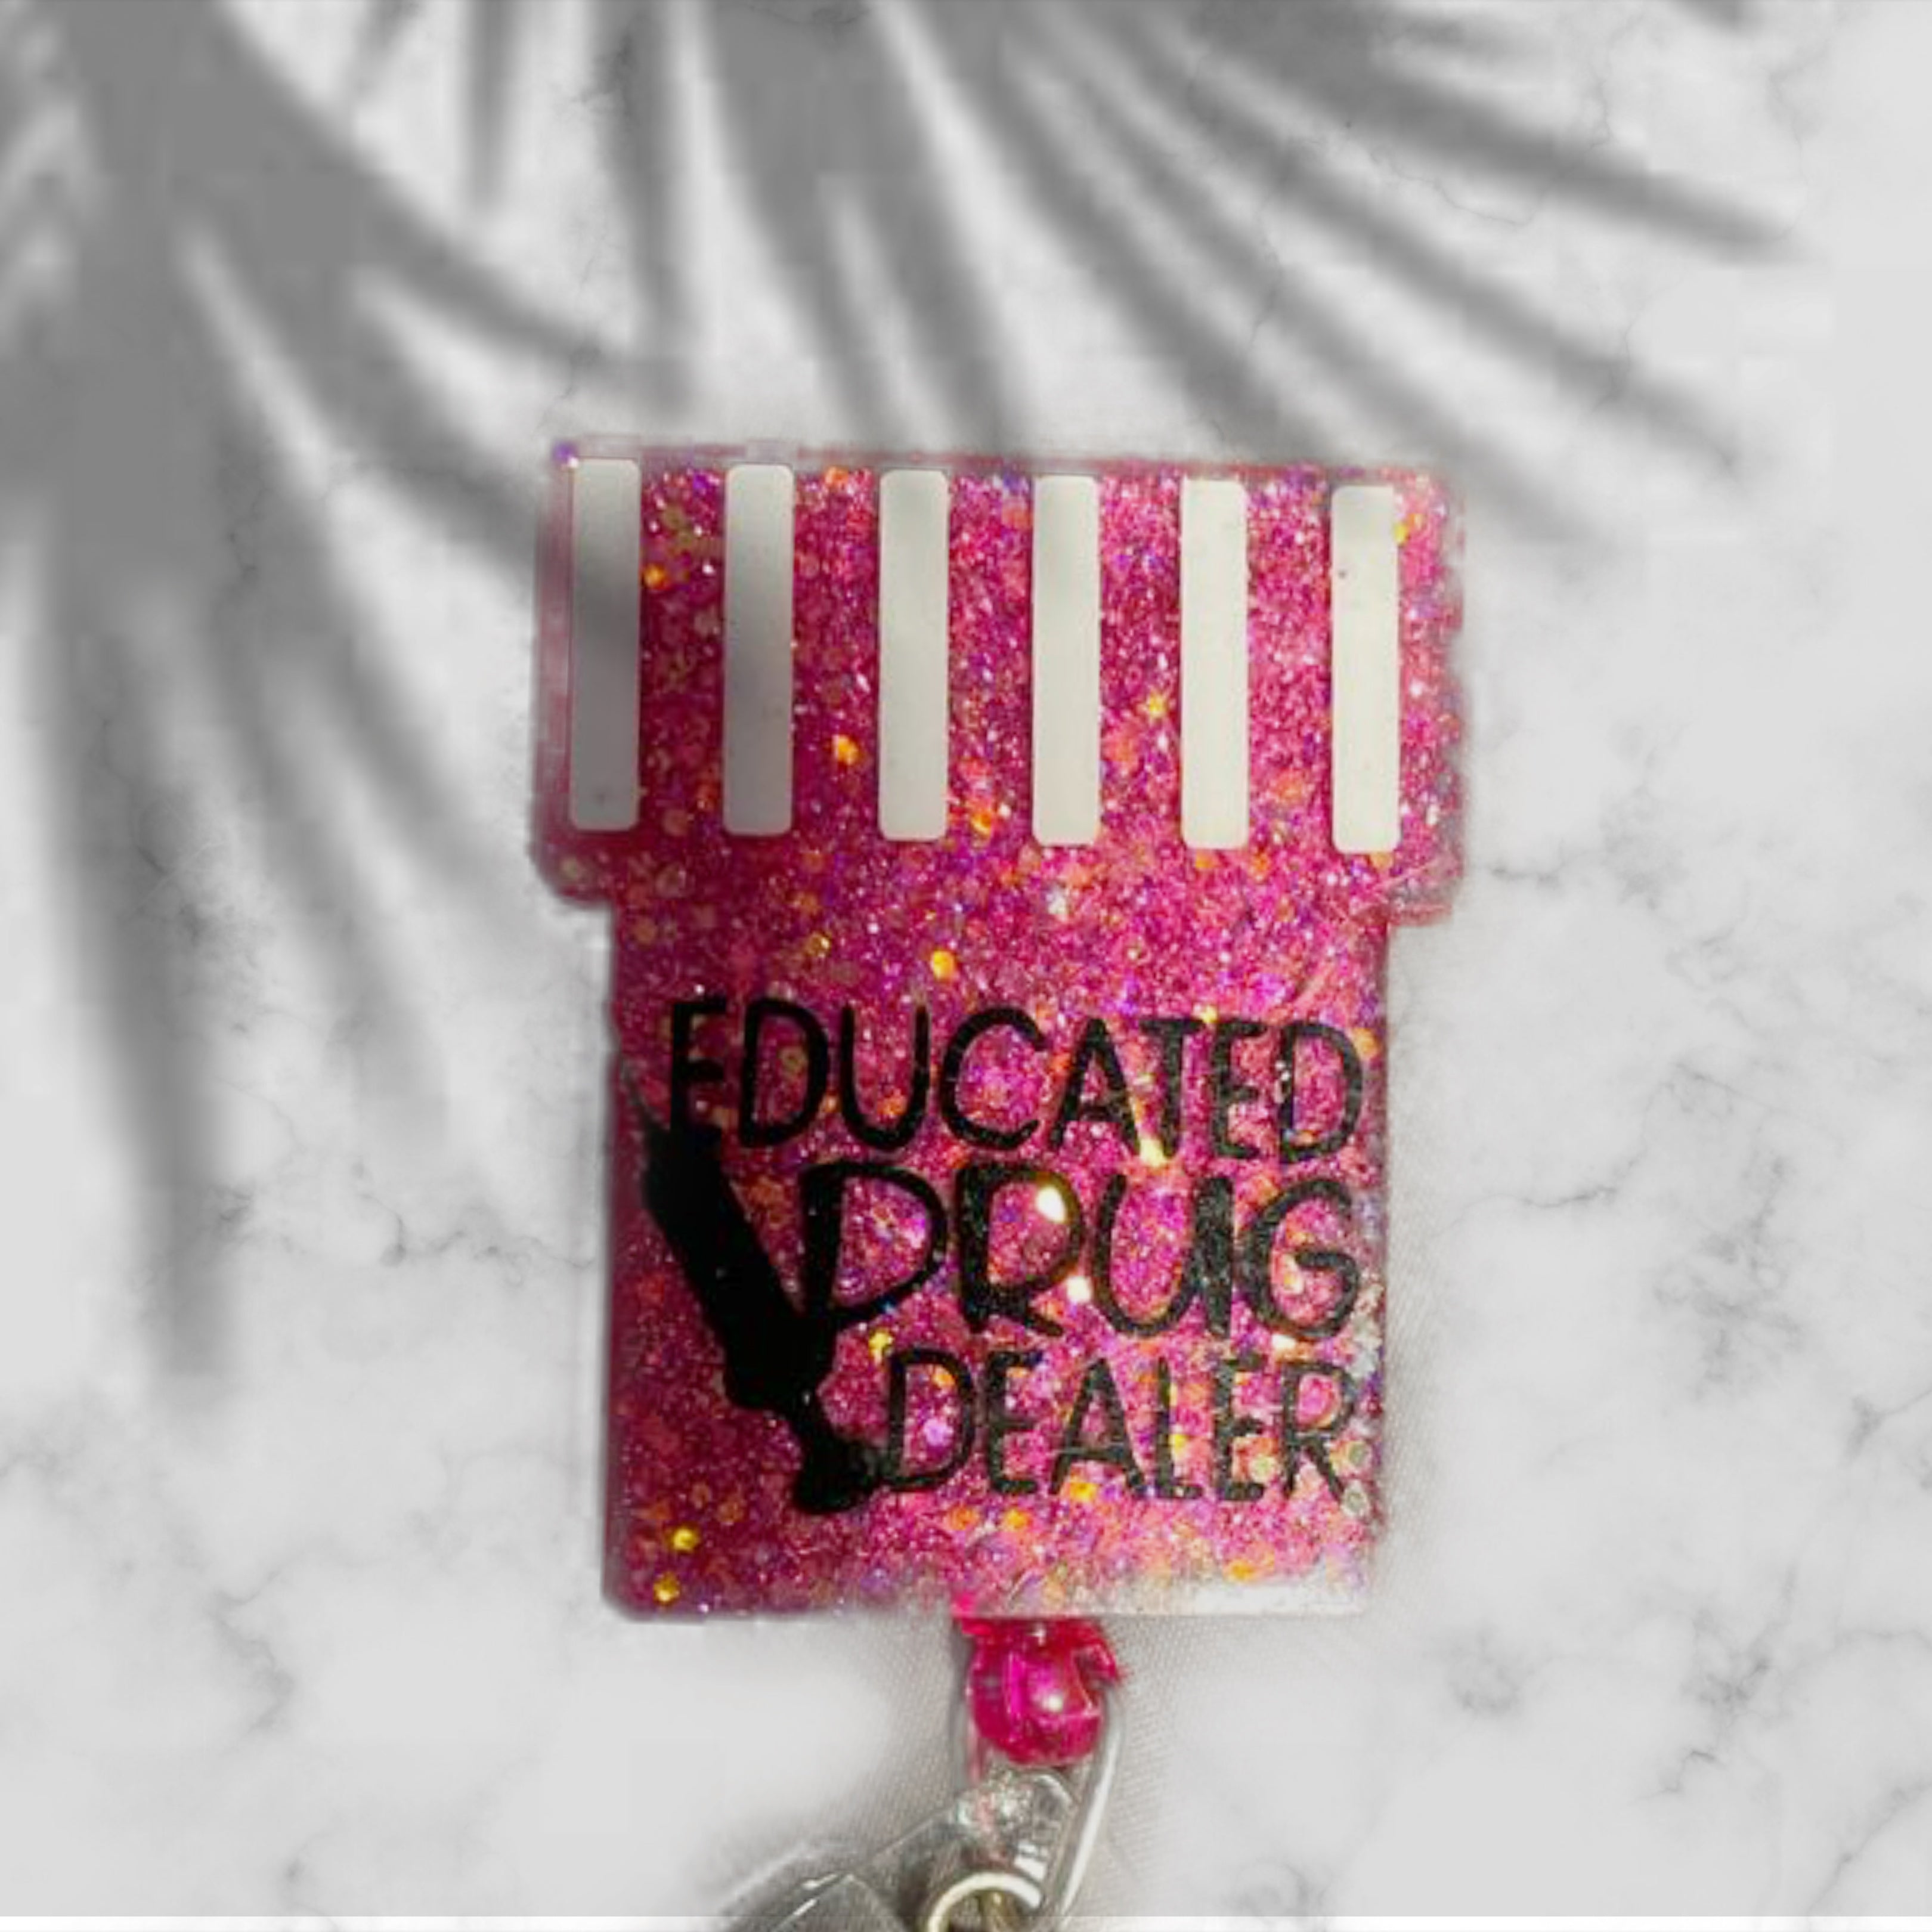 Educated Drug Dealer Badge Pink